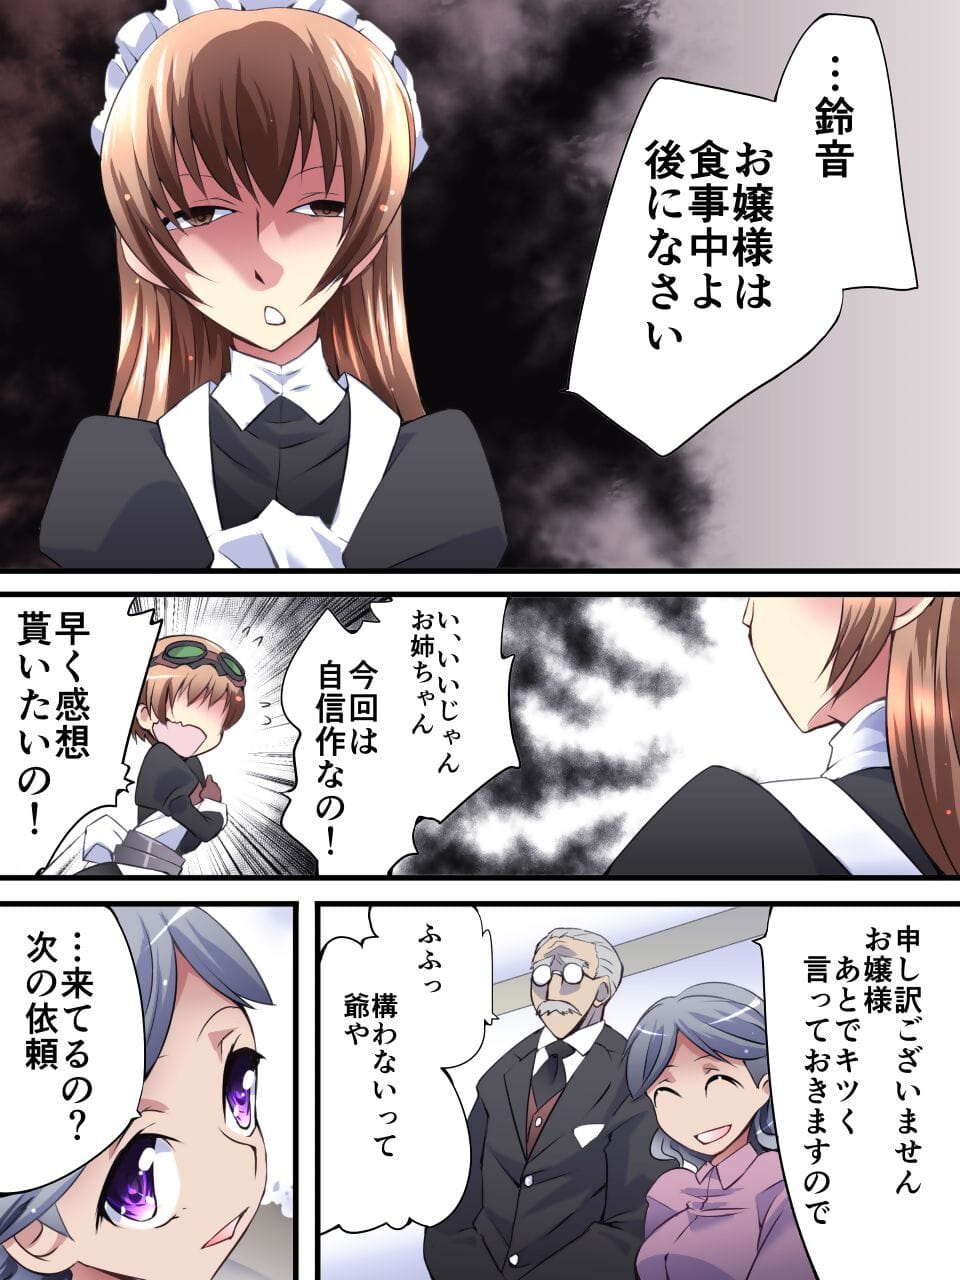 kaitou argent chat manga interdiction Dai wa page 1